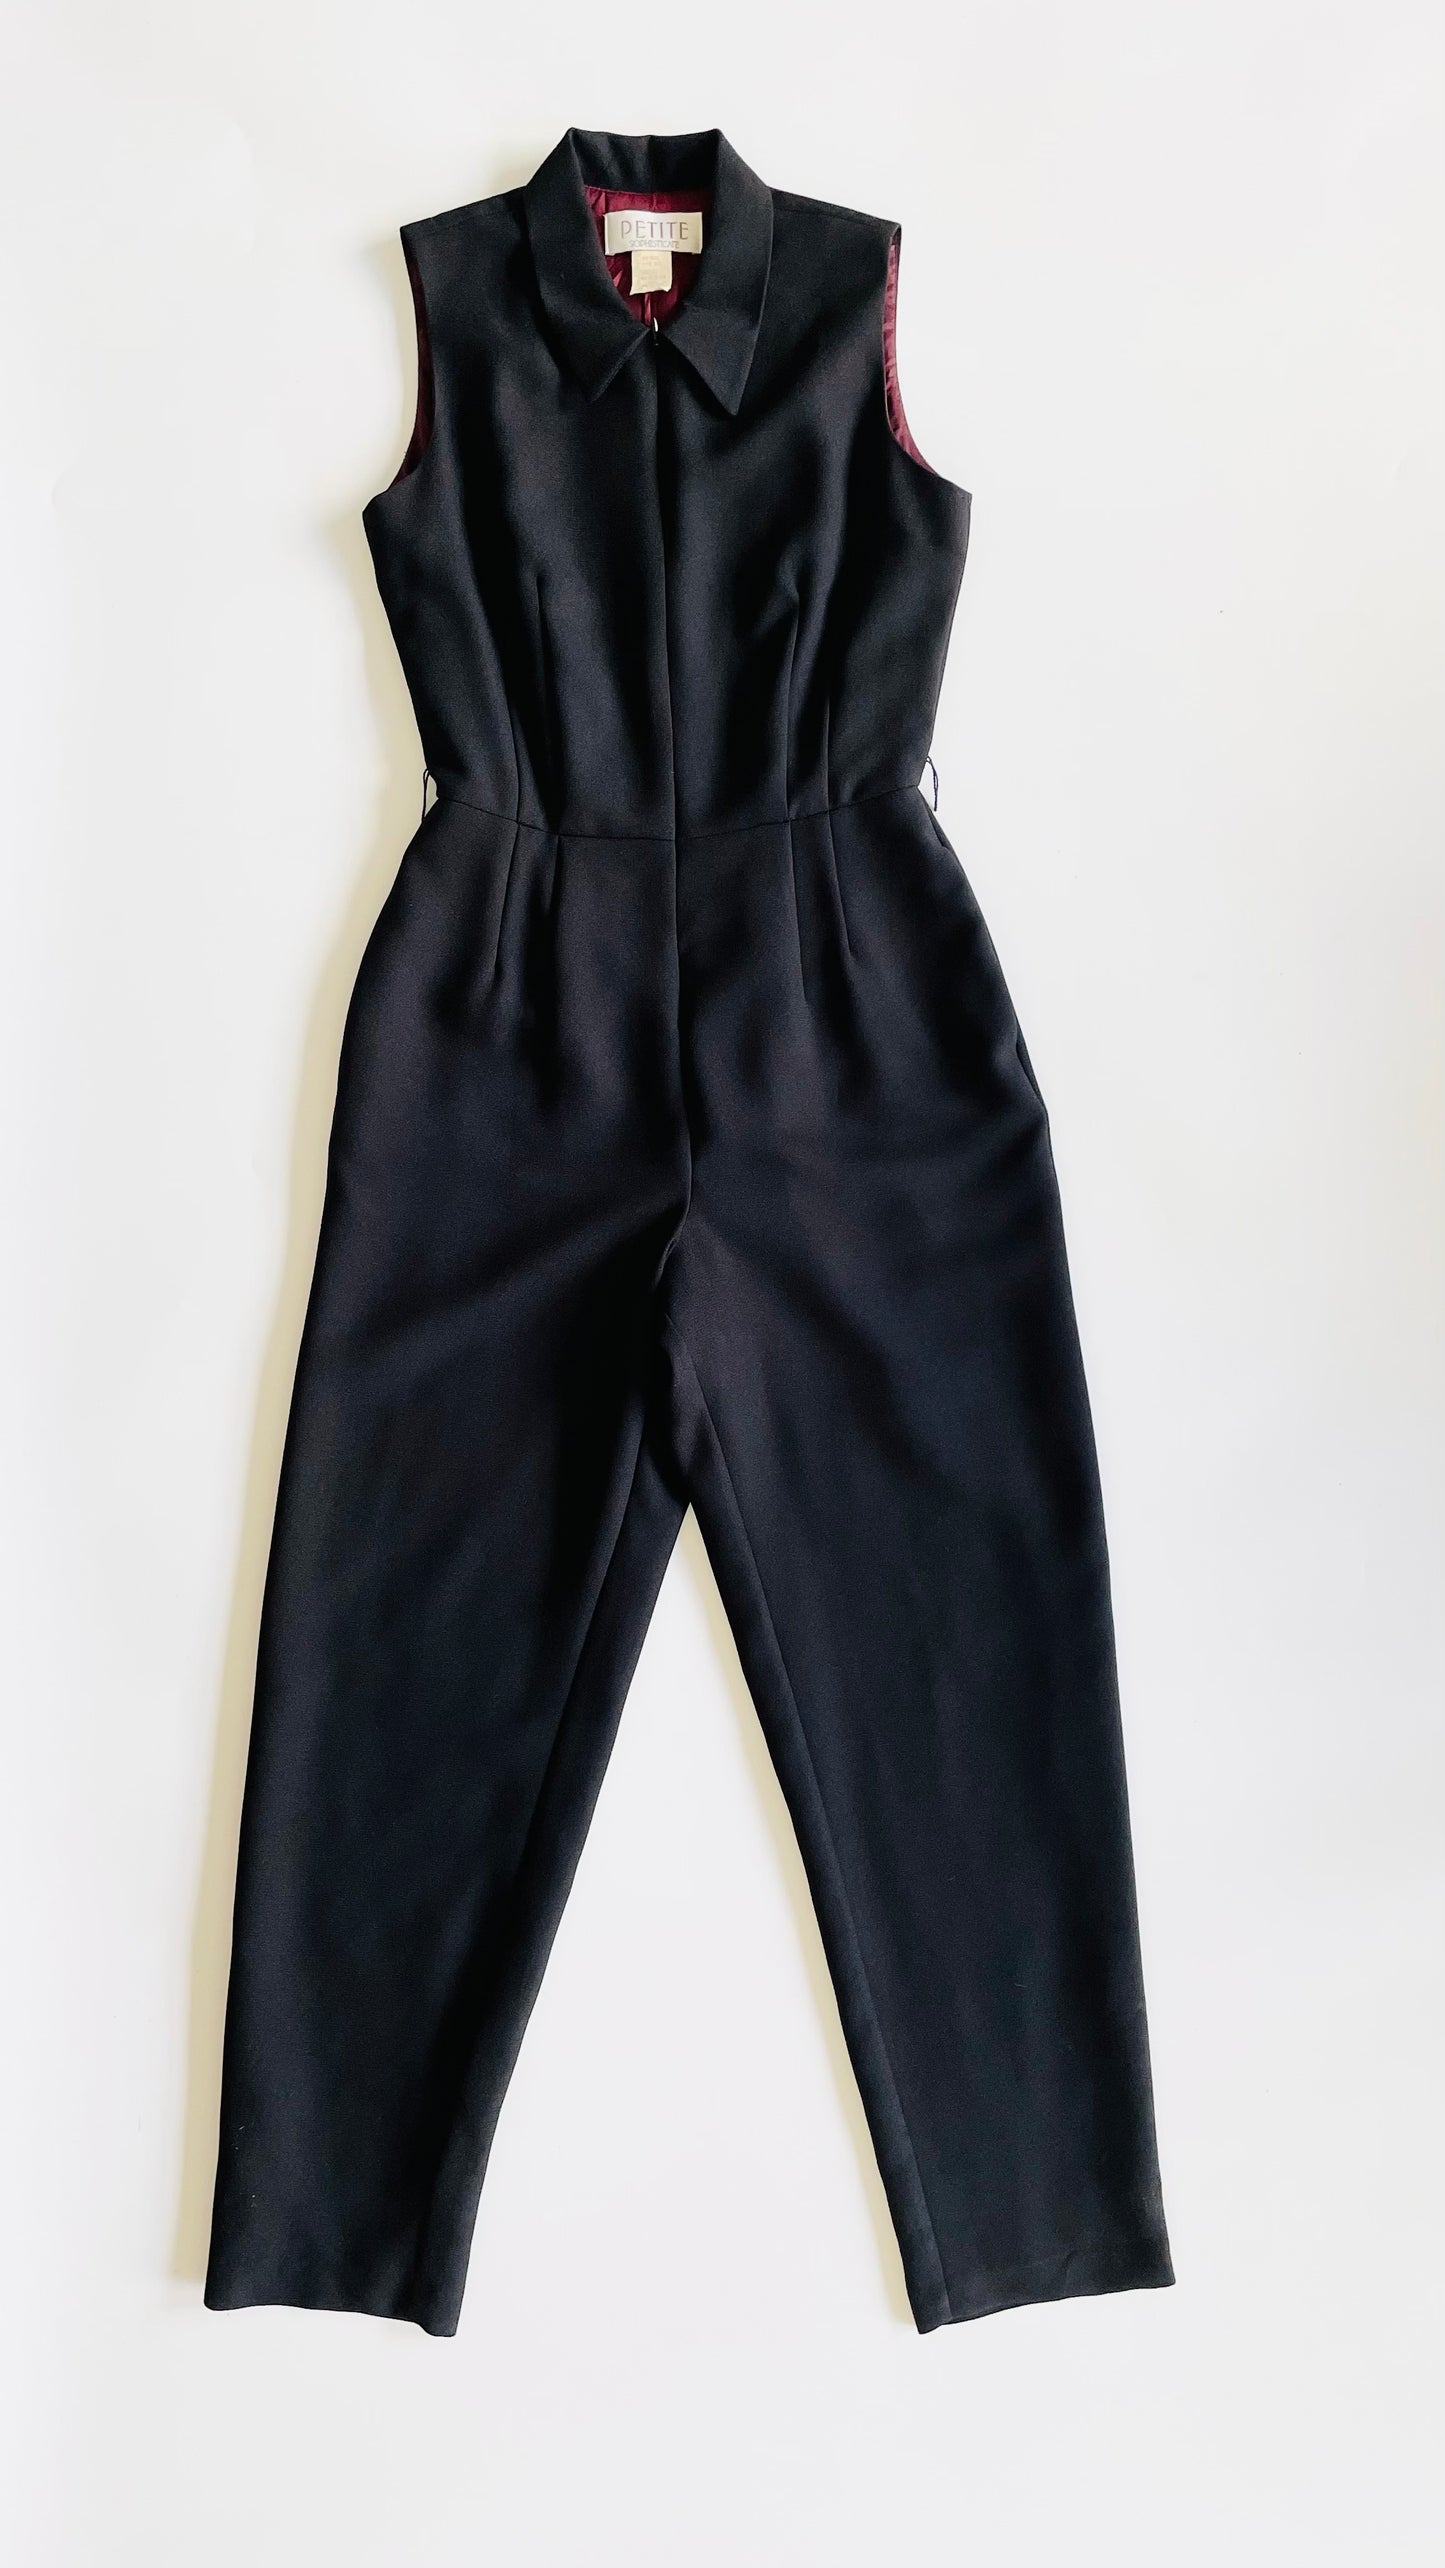 Vintage 90s black tailored jumpsuit - Size 4